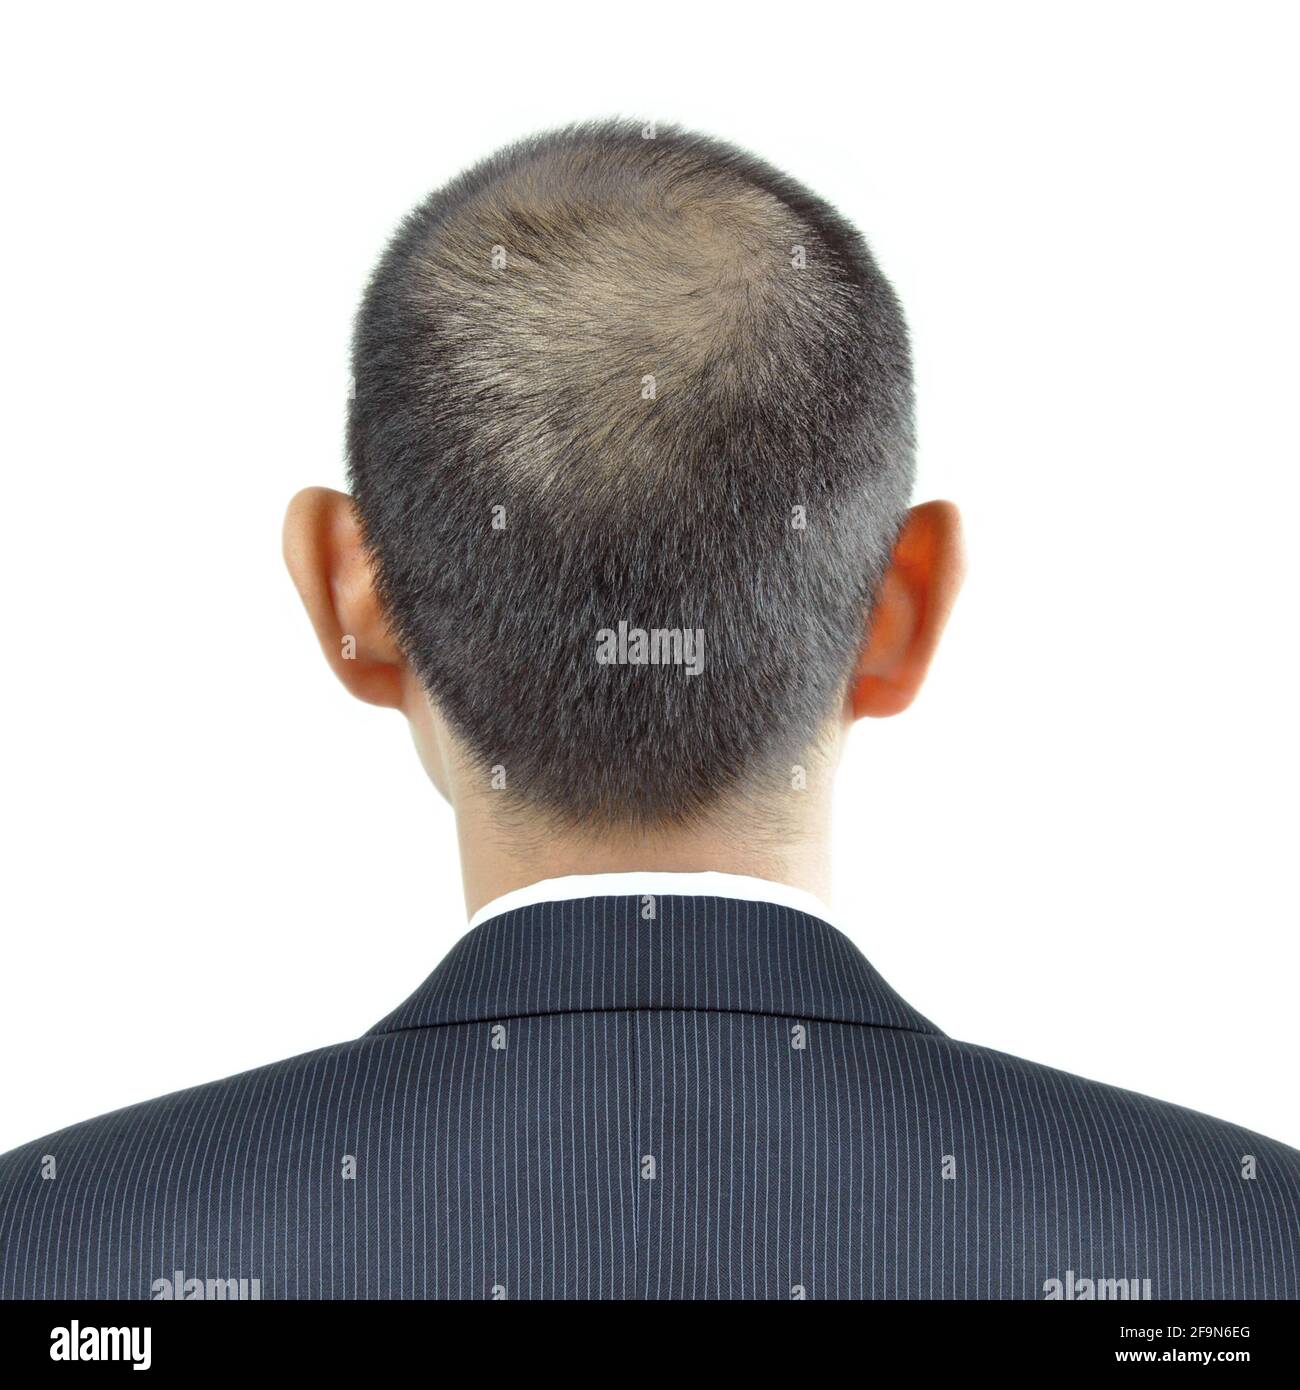 Sintomo di assottigliamento dei capelli sulla testa di un uomo - segno di perdita di capelli Foto Stock